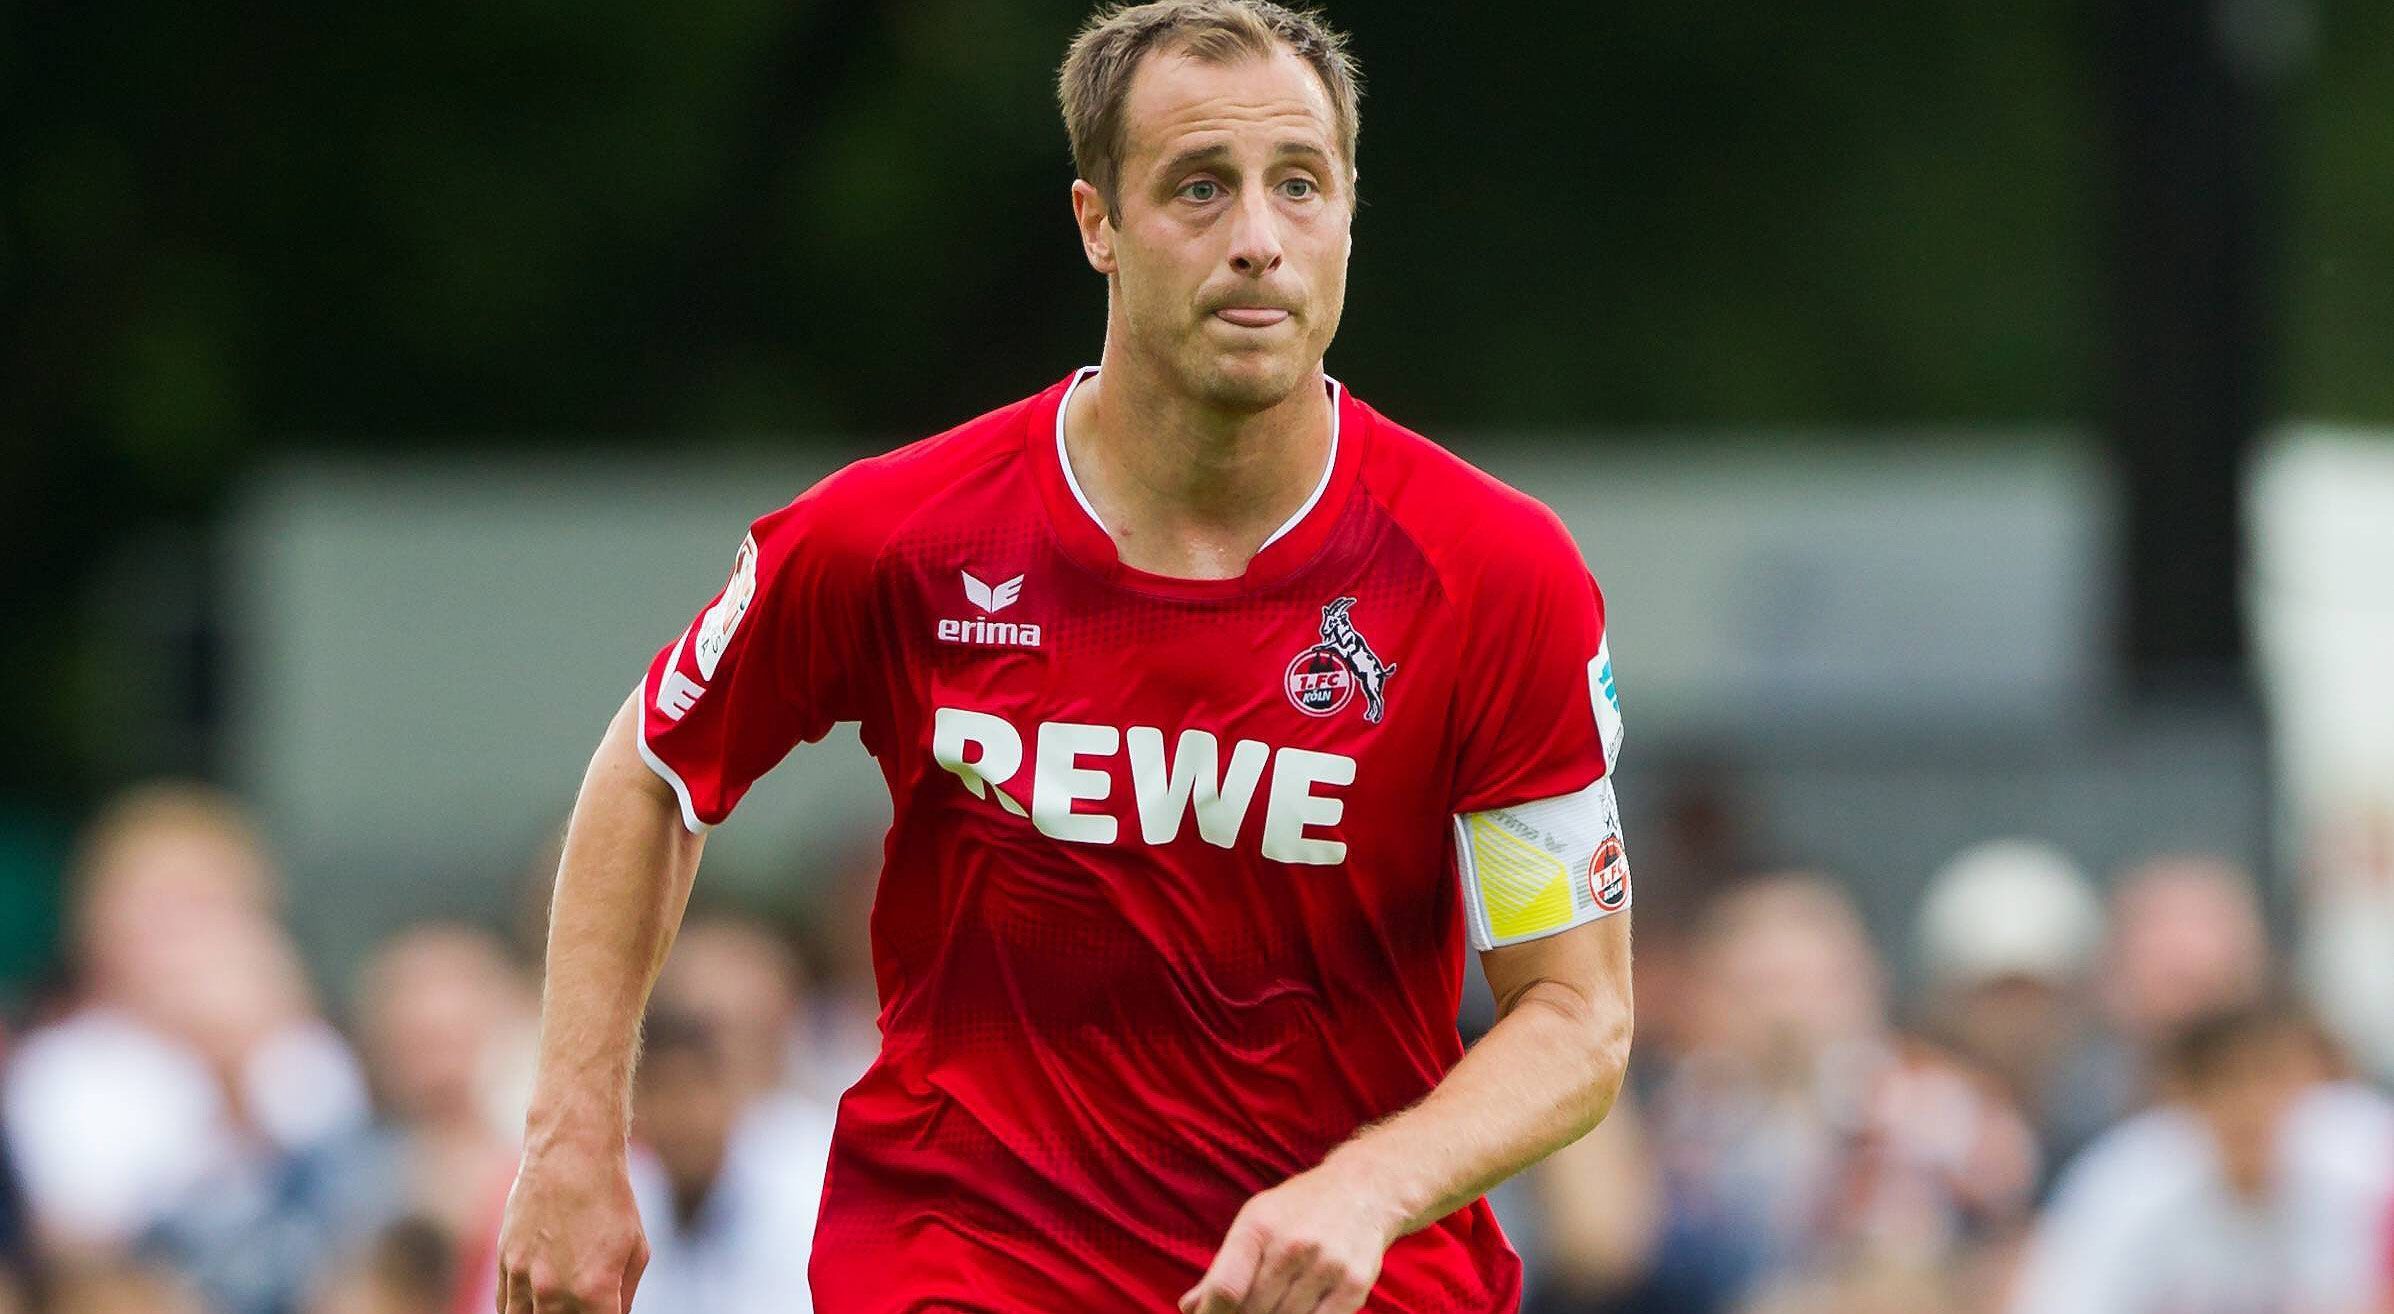 
                <strong>Matthias Lehmann (1. FC Köln)</strong><br>
                Nach dem Abgang von Miso Brecko zum 1. FC Nürnberg übernimmt Matthias Lehmann die Binde beim 1. FC Köln. Der Mittelfeldspieler steht seit 2012 bei den Geißböcken unter Vertrag und war bislang der Vertreter des nun abgewanderten Slowenen.
              